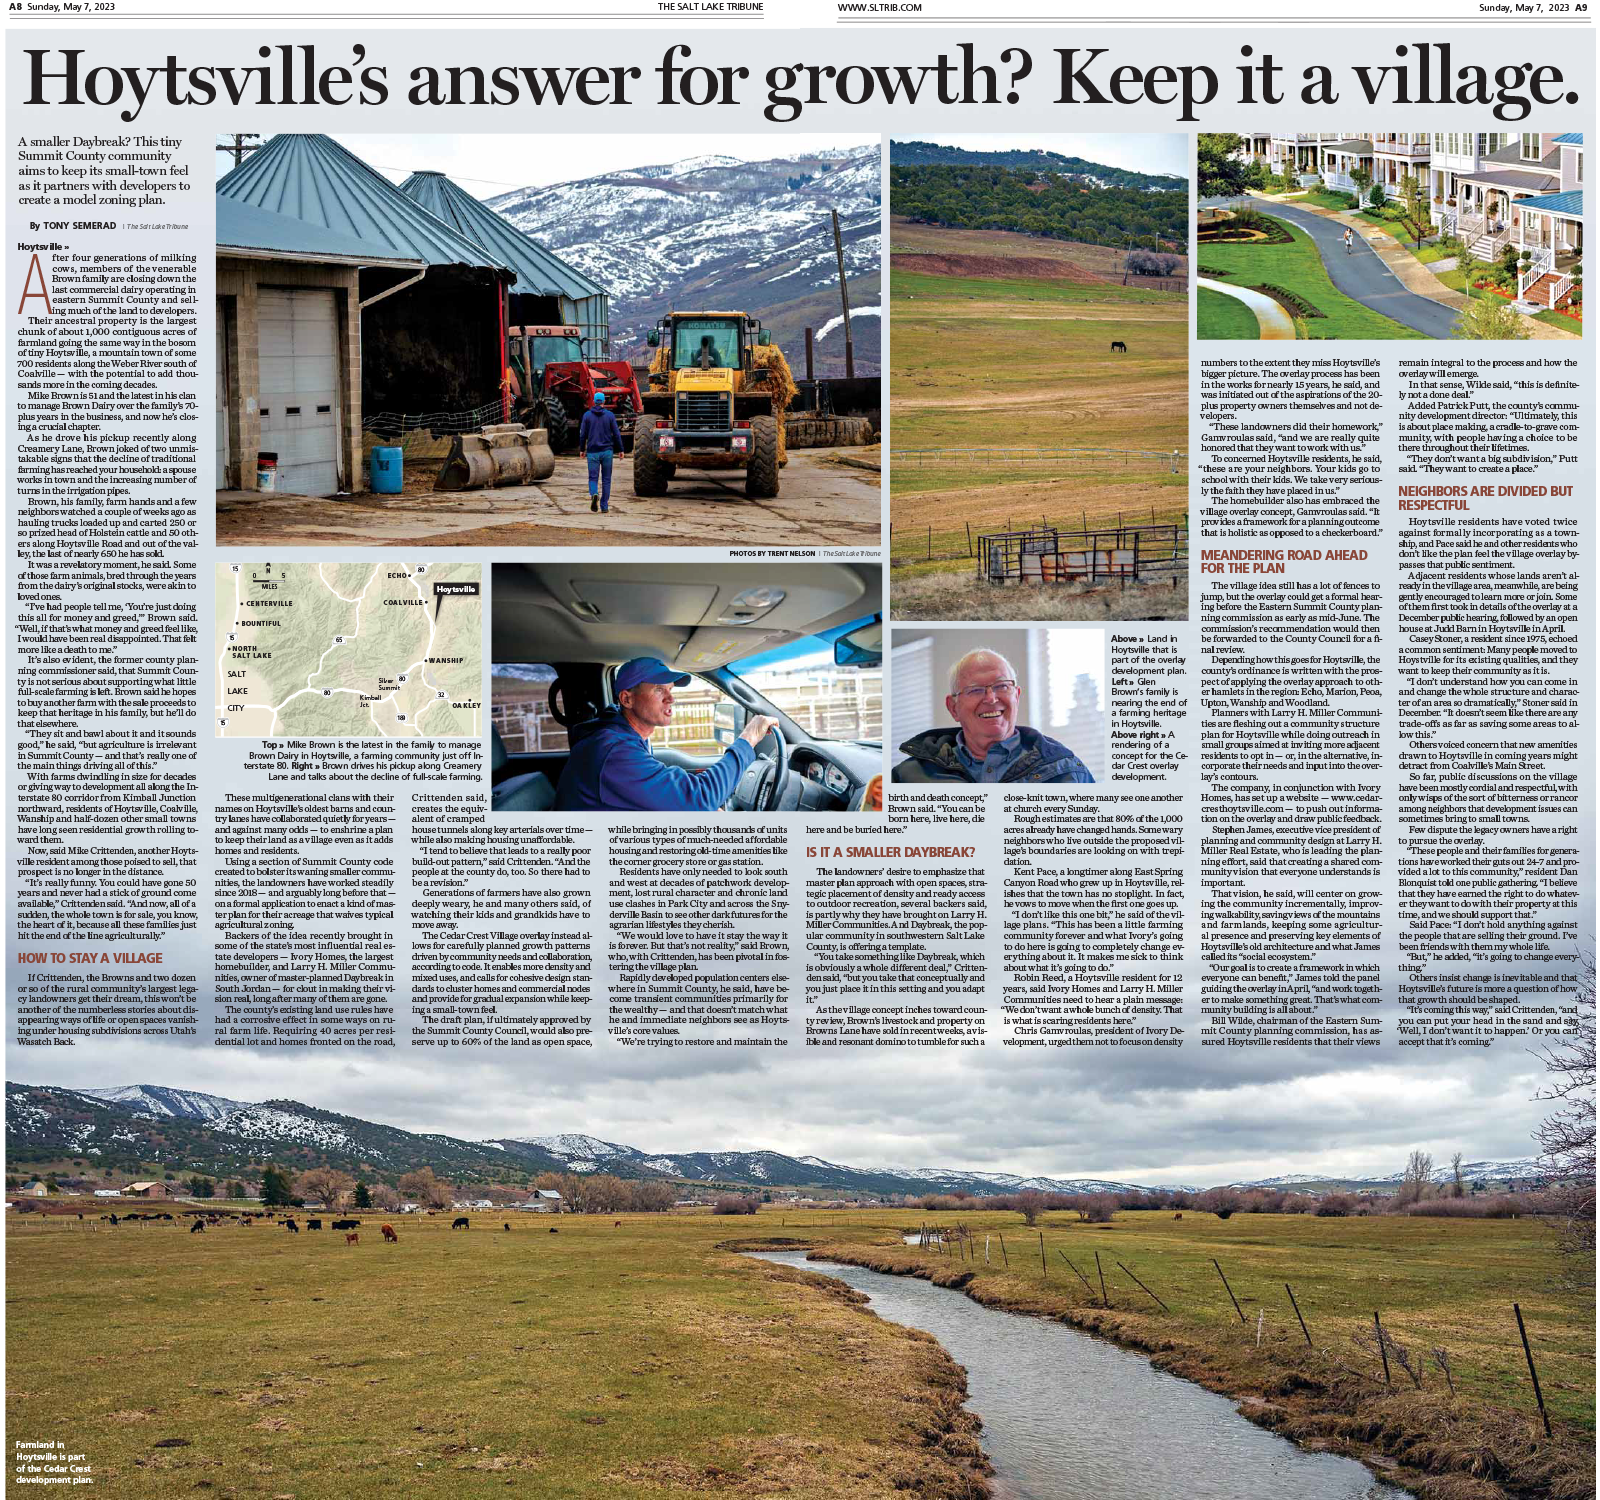 Salt Lake Tribune Article Focuses on New Ivory Development in Hoytsville Utah